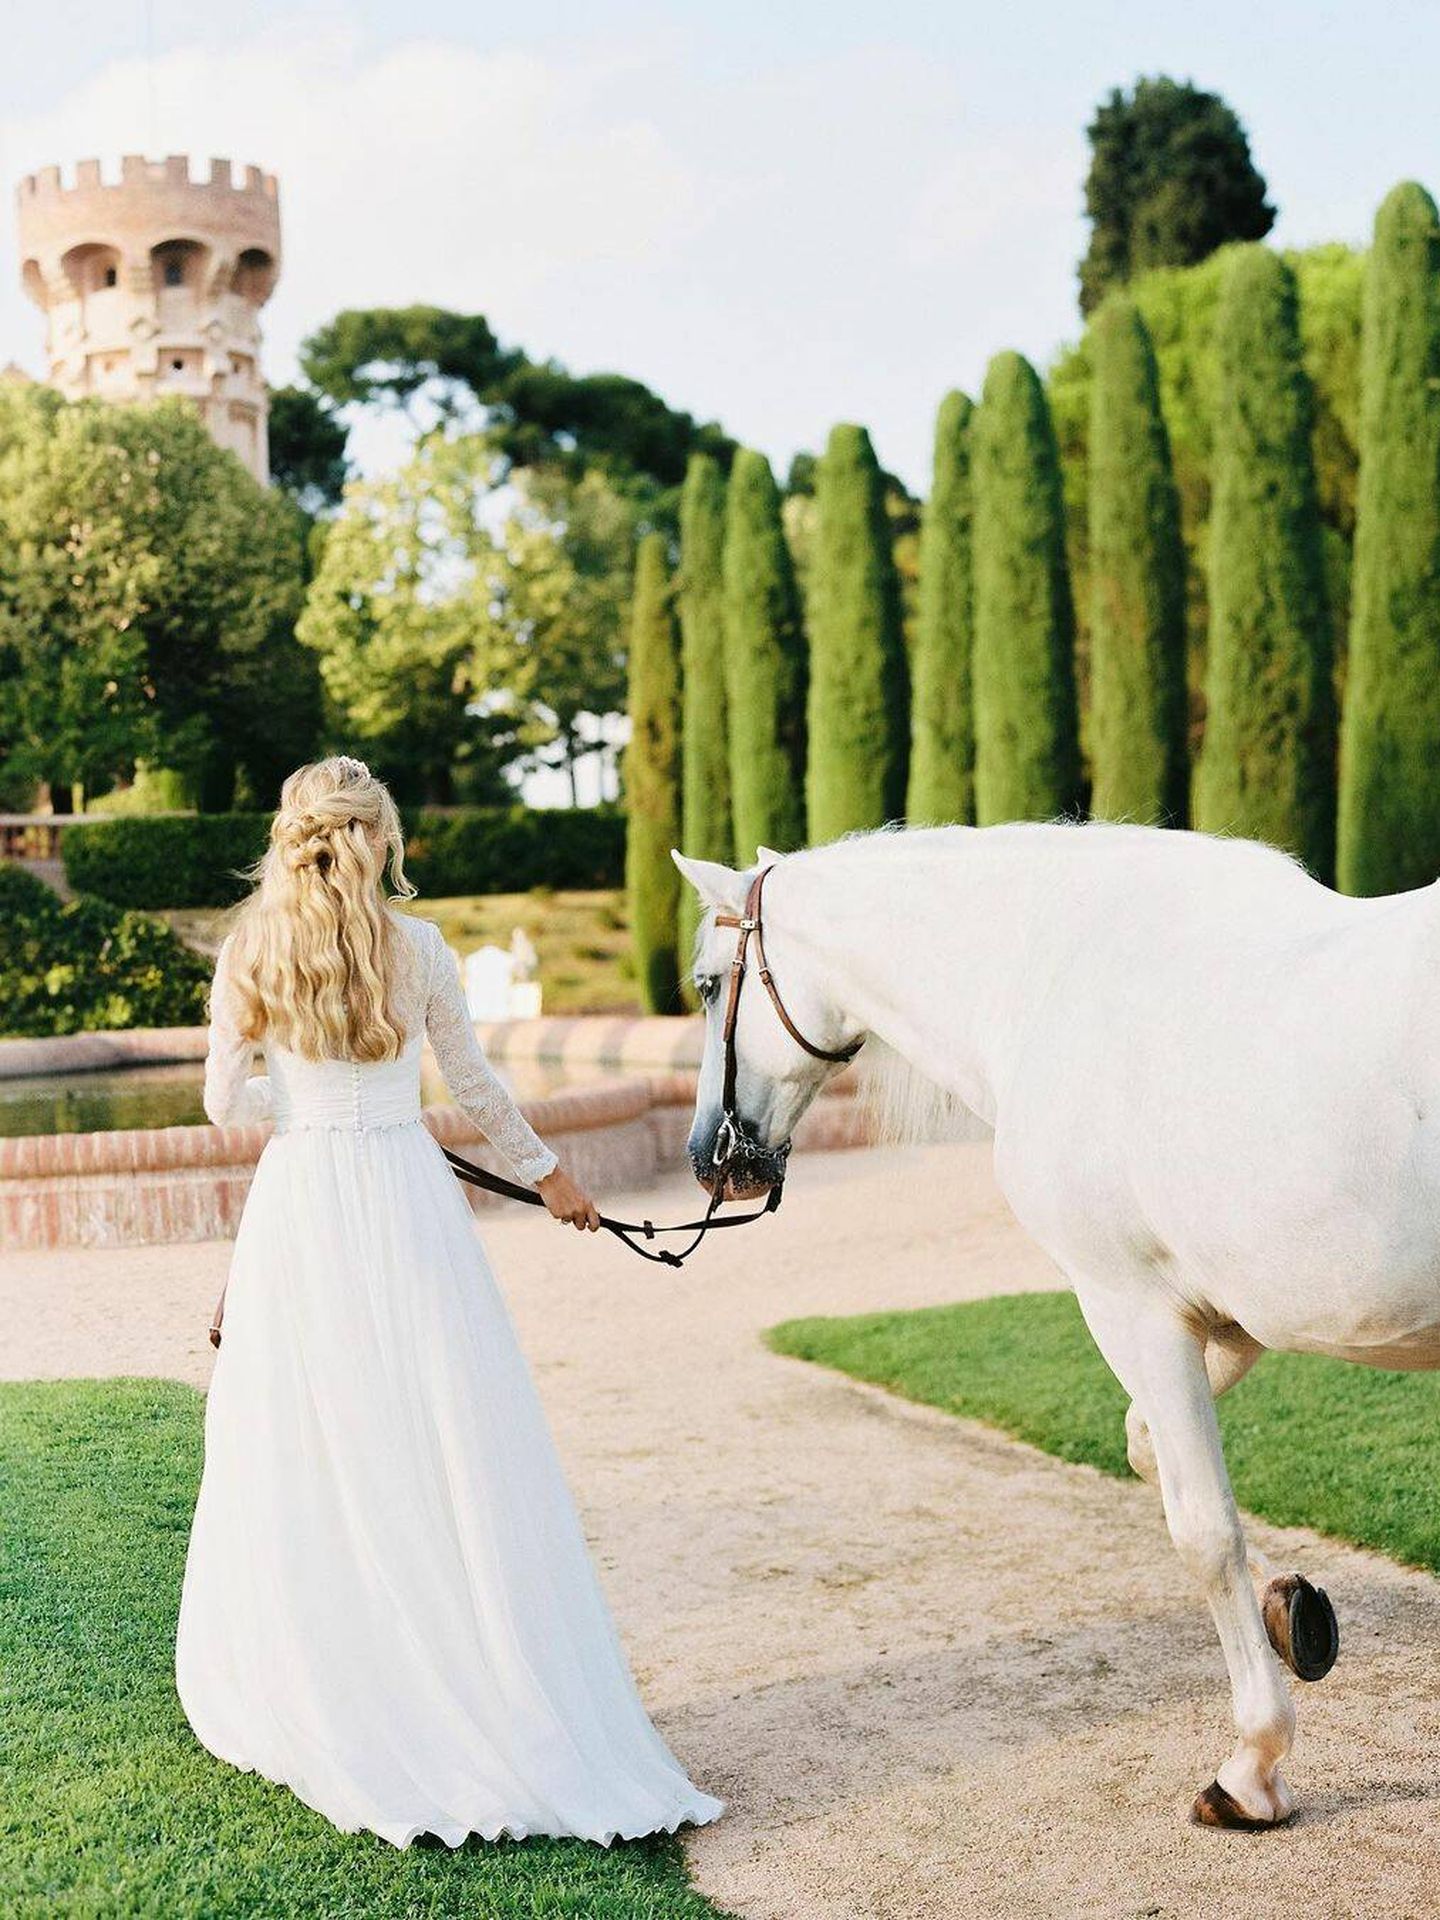 Una boda inspirada en la serie de Netflix, 'Los Bridgerton'. (Instagram/ @padilla_rigau)